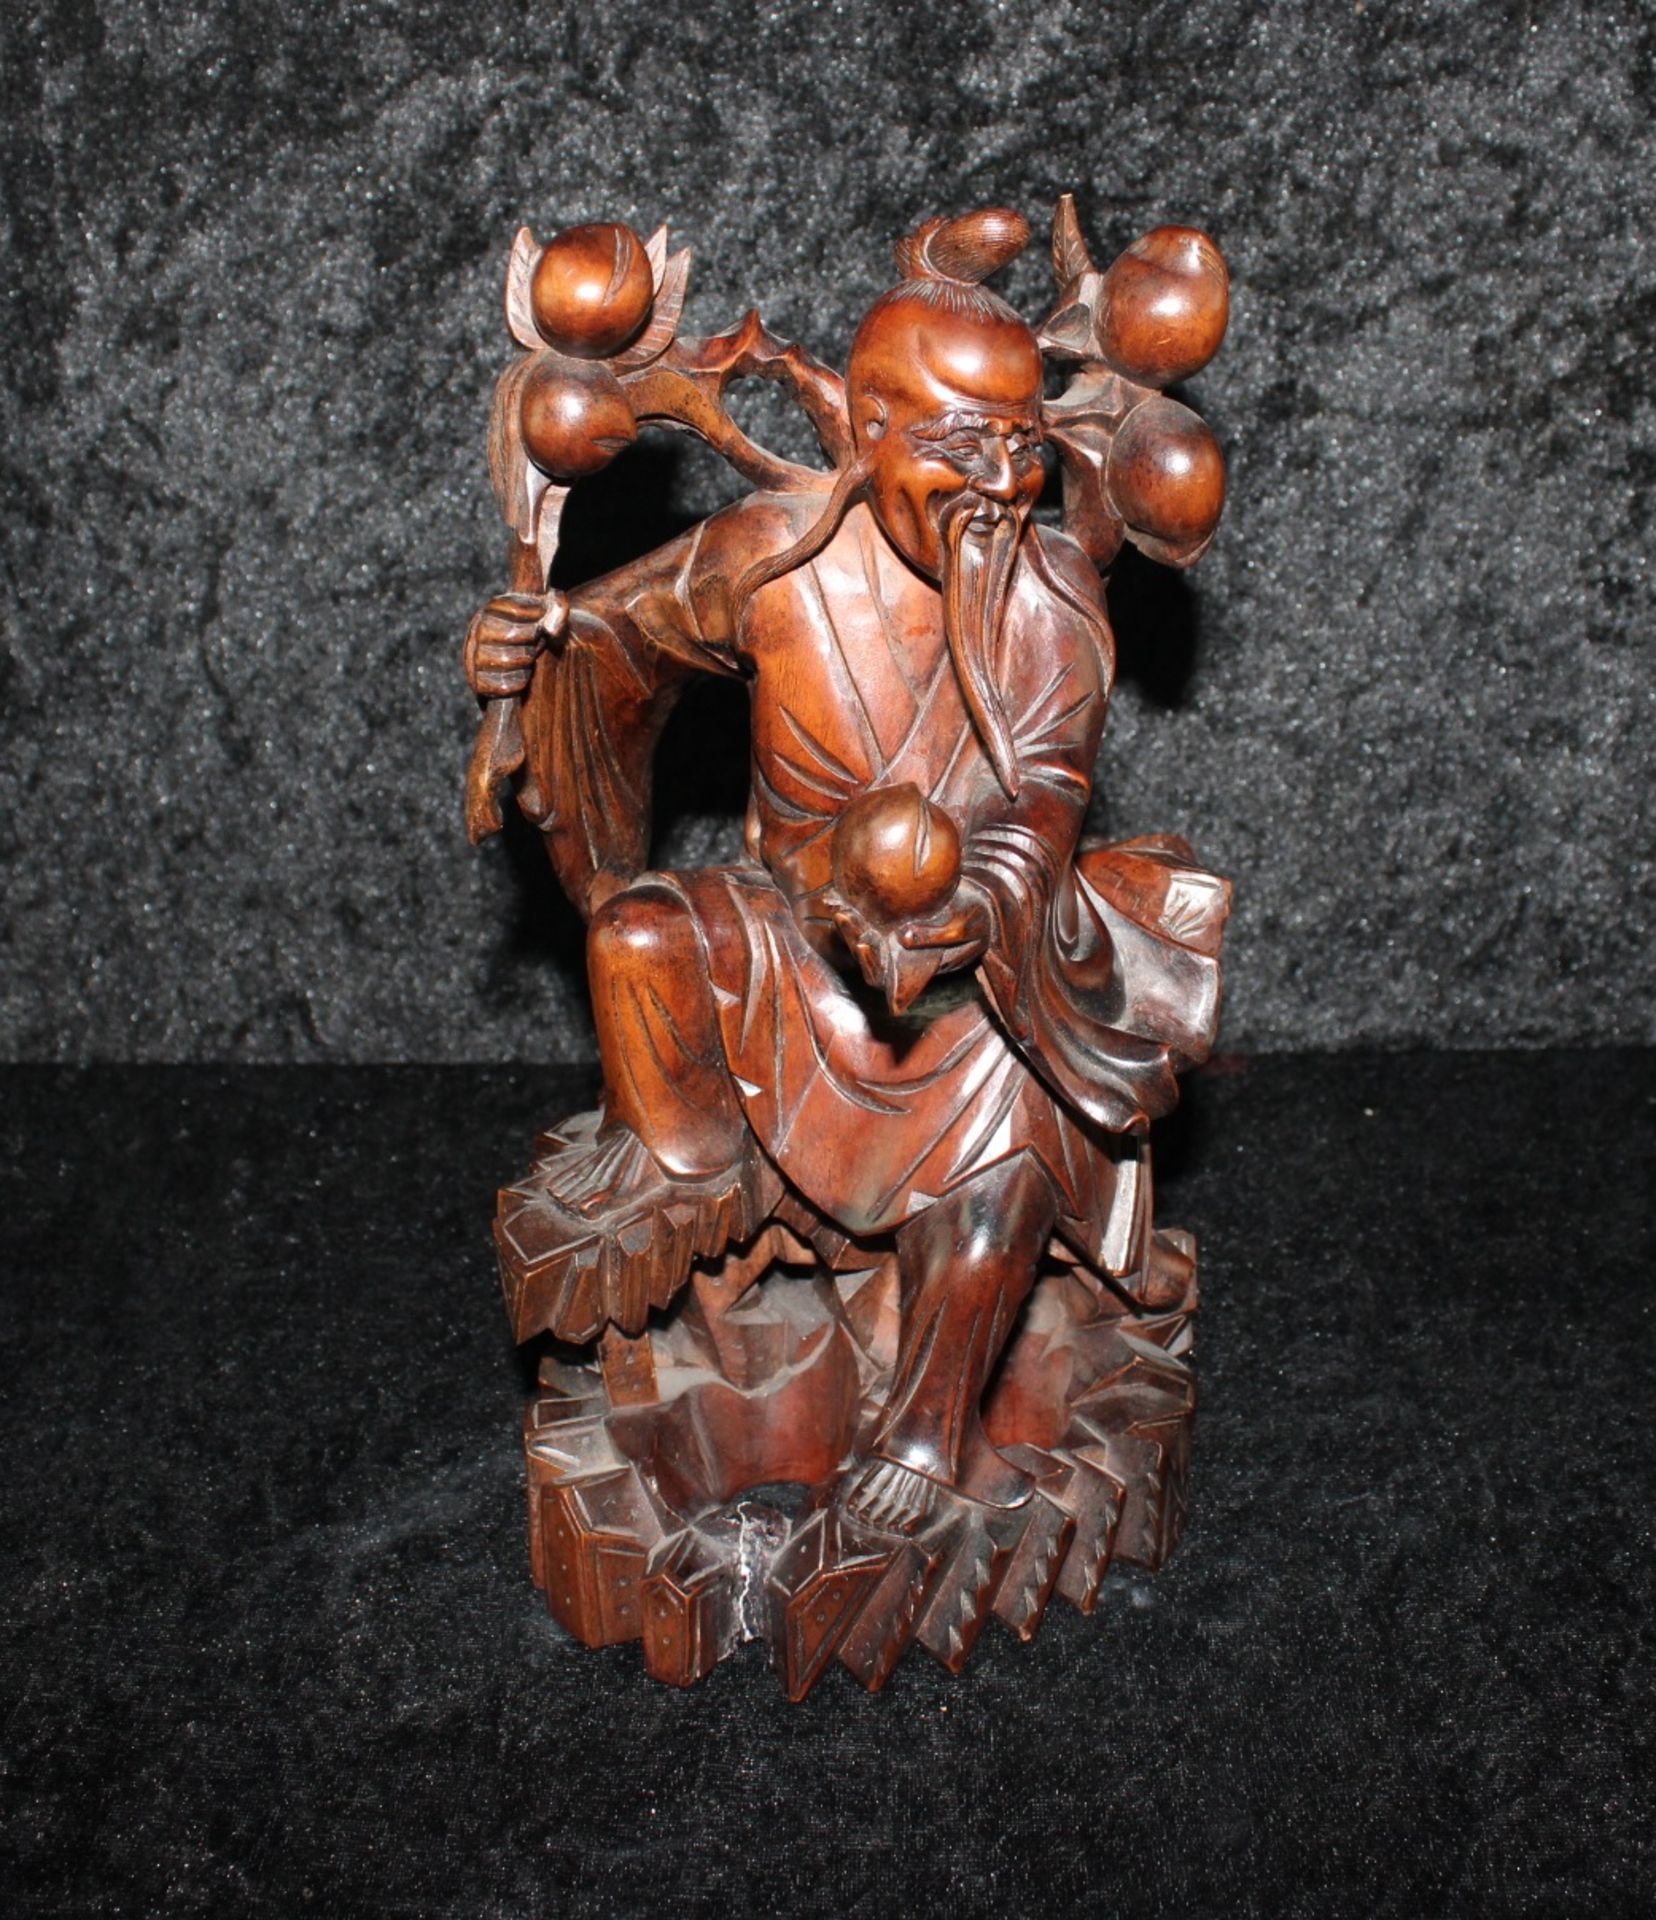 Holzfigur "Shoulao"chinesischer Gott der Langlebigkeit, 20.Jh.